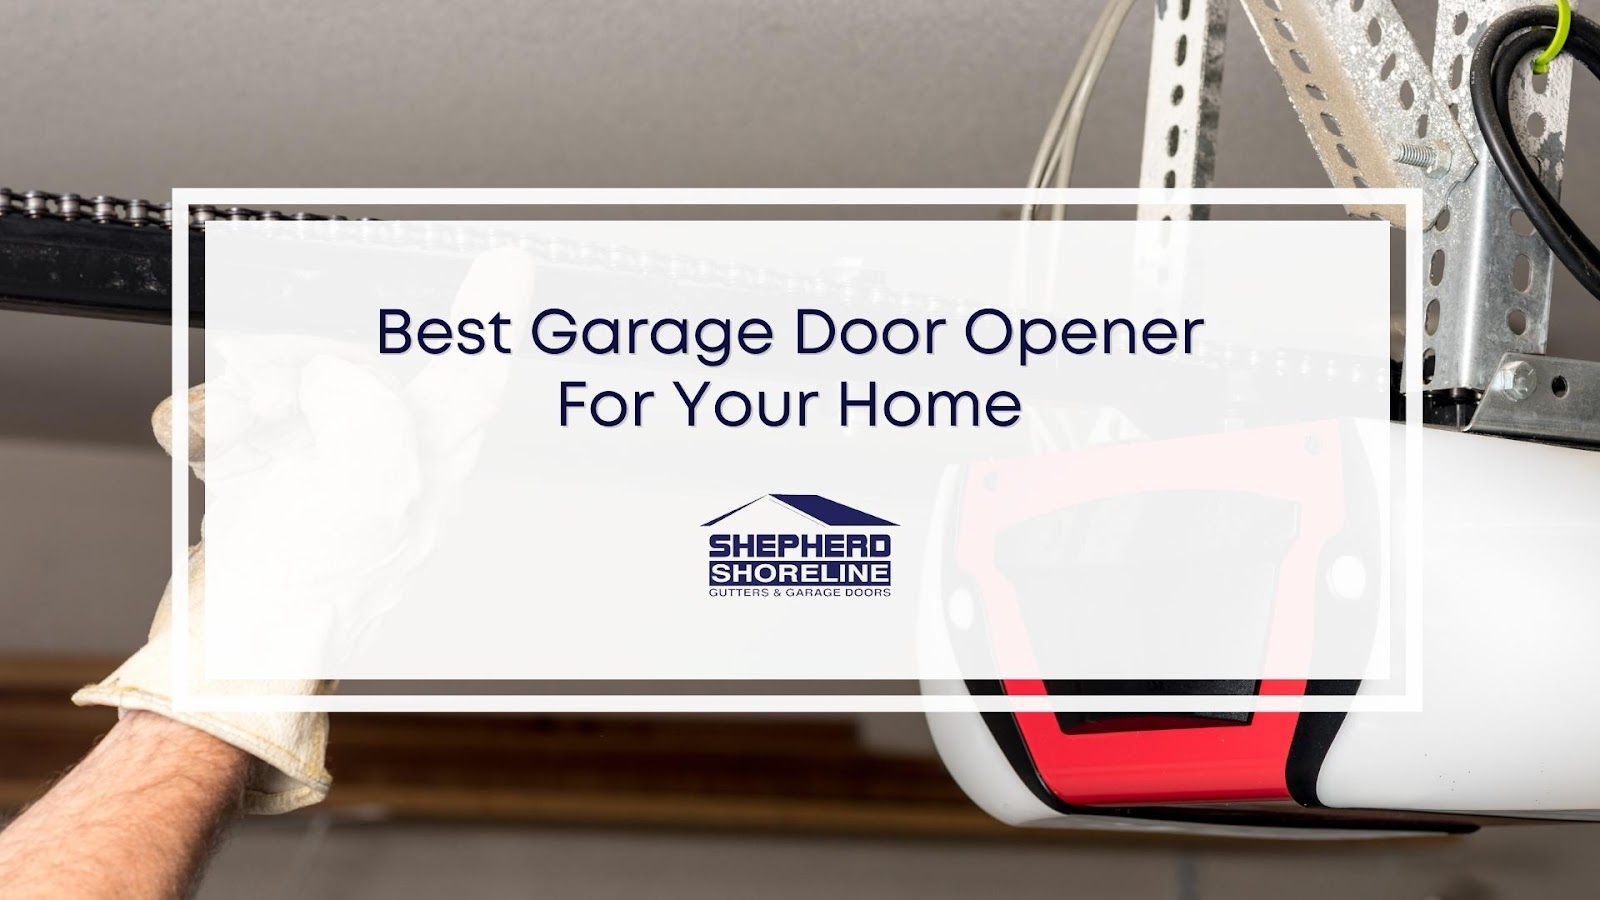 Featured image of the best garage door opener for your home